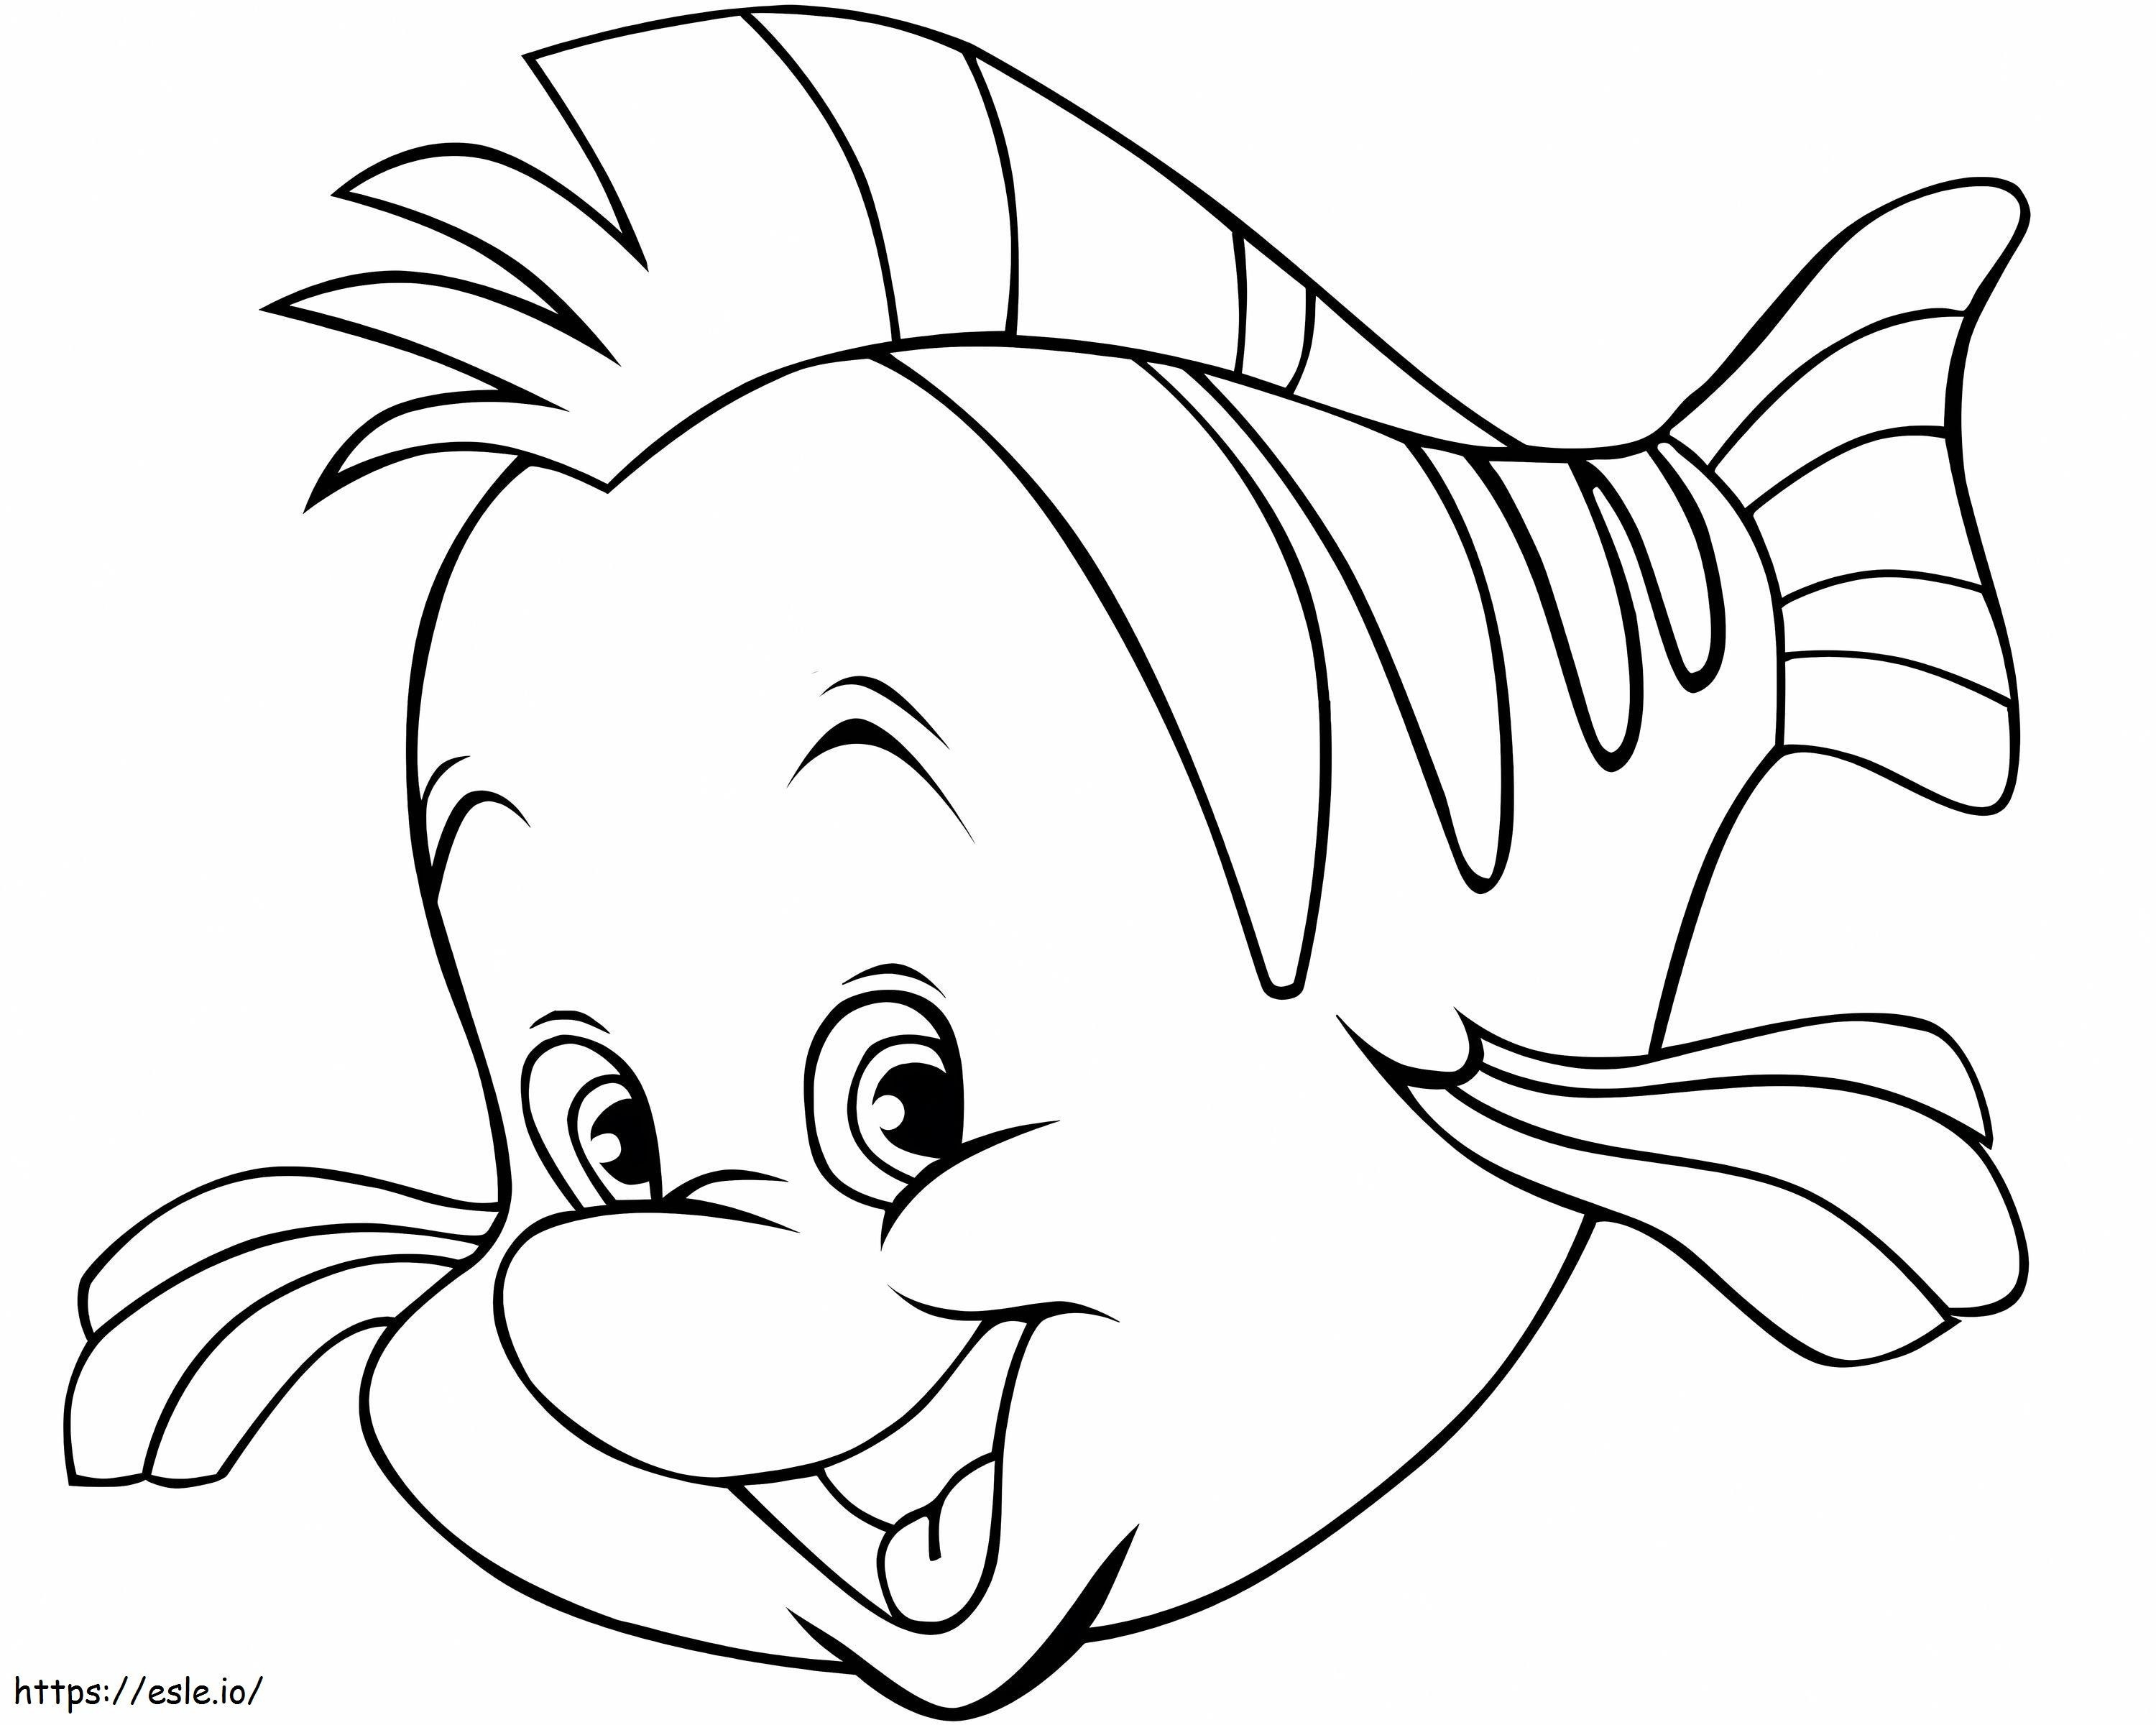 Pesce divertente del fumetto da colorare